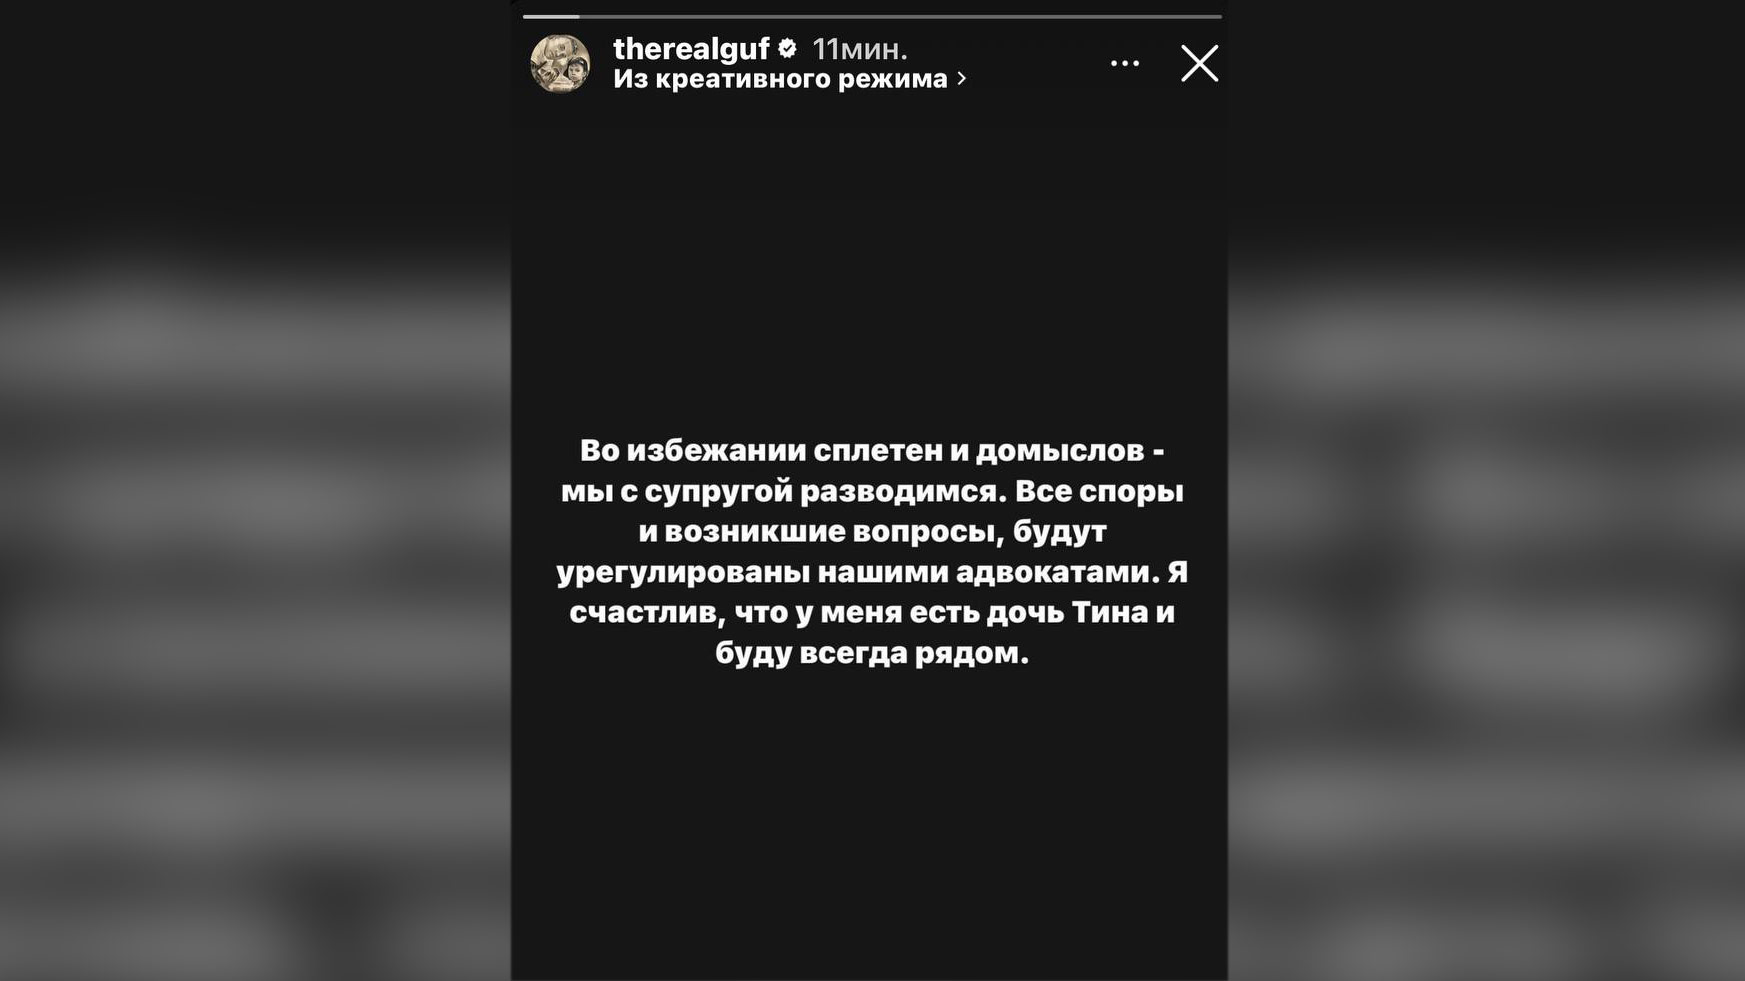 Гуф официально разводится с Королёвой. Фото © Instagram (внесён в реестр экстремистских организаций, запрещён на территории Российской Федерации) / therealguf